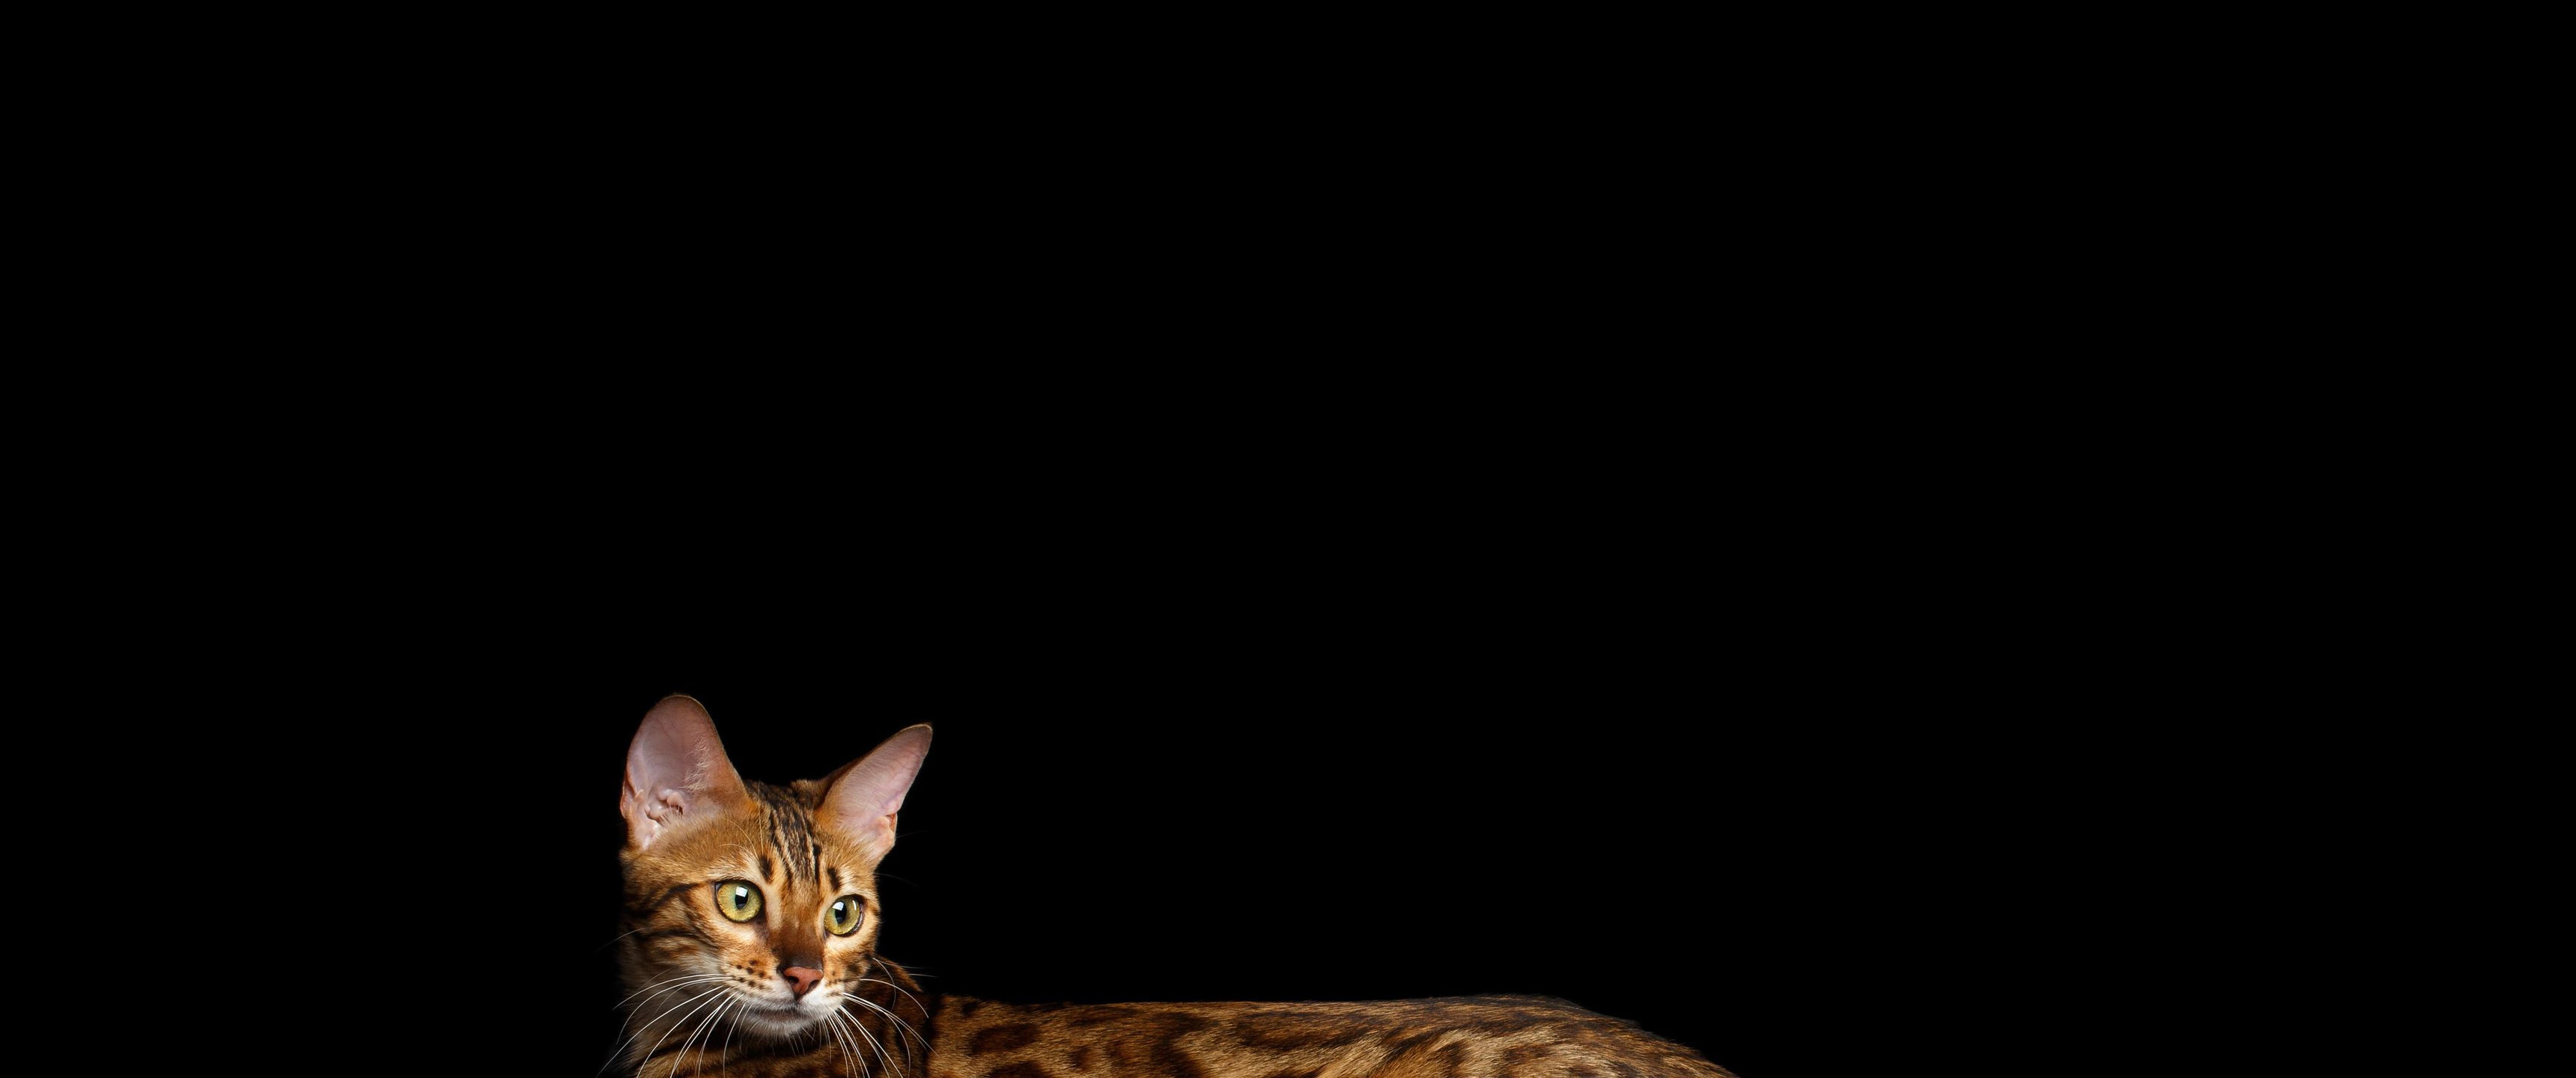 Mèo Bengal là một loài mèo siêu đáng yêu, đặc biệt với bộ lông nâu đốm đặc trưng. Đối với những ai yêu động vật, hình ảnh mèo Bengal trên nền đen sẽ là món quà thật sự đáng để xem.